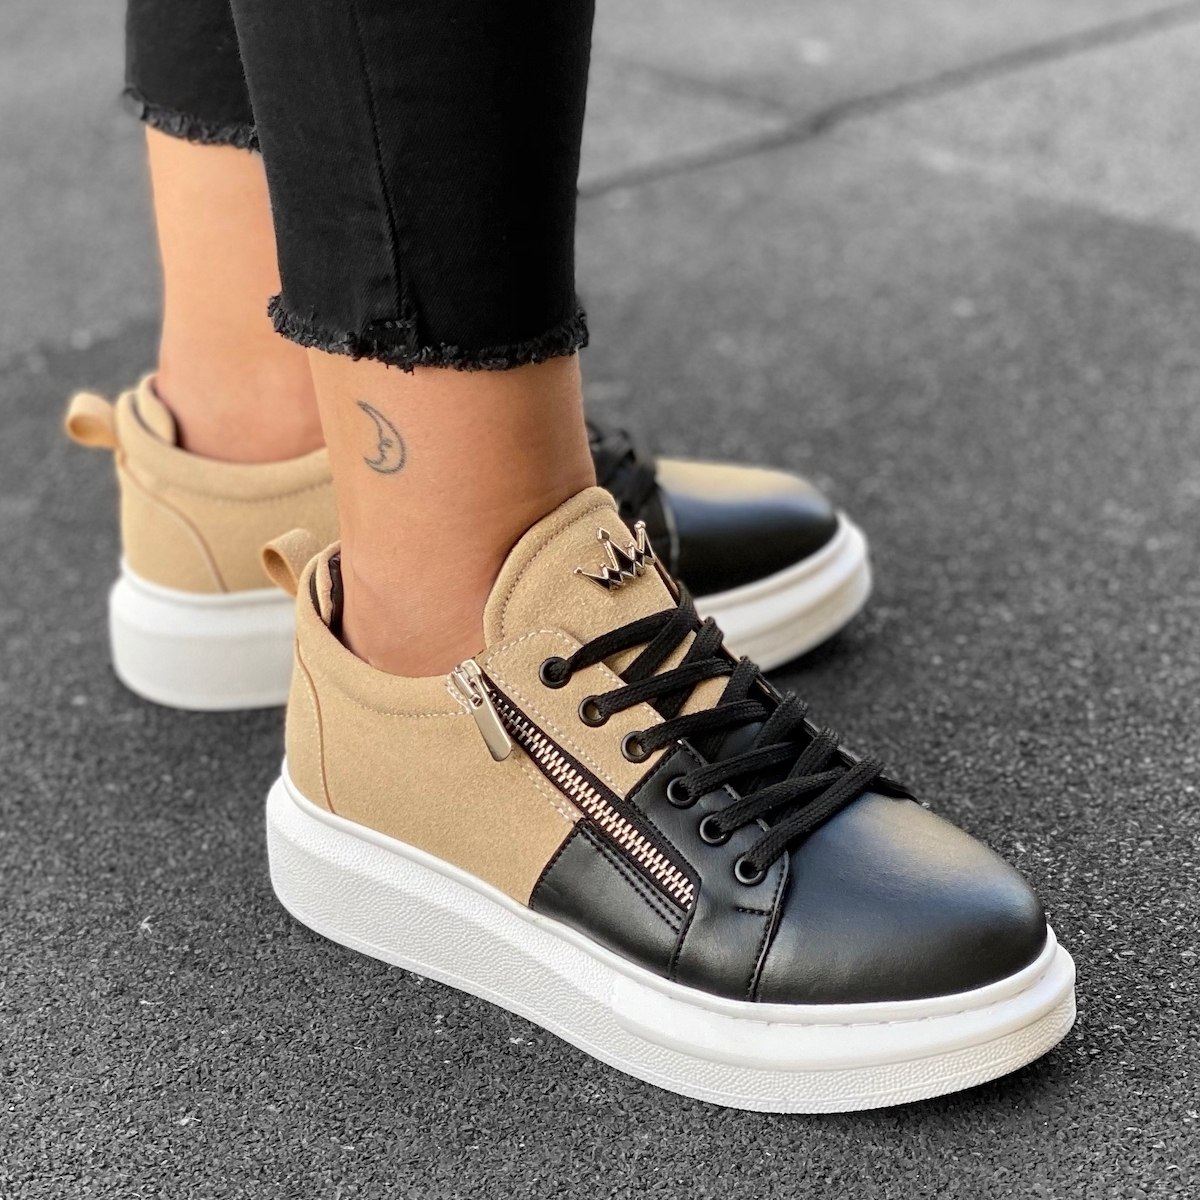 Women's Hype Sole Zipped Style Sneakers In Cream-Black - 1